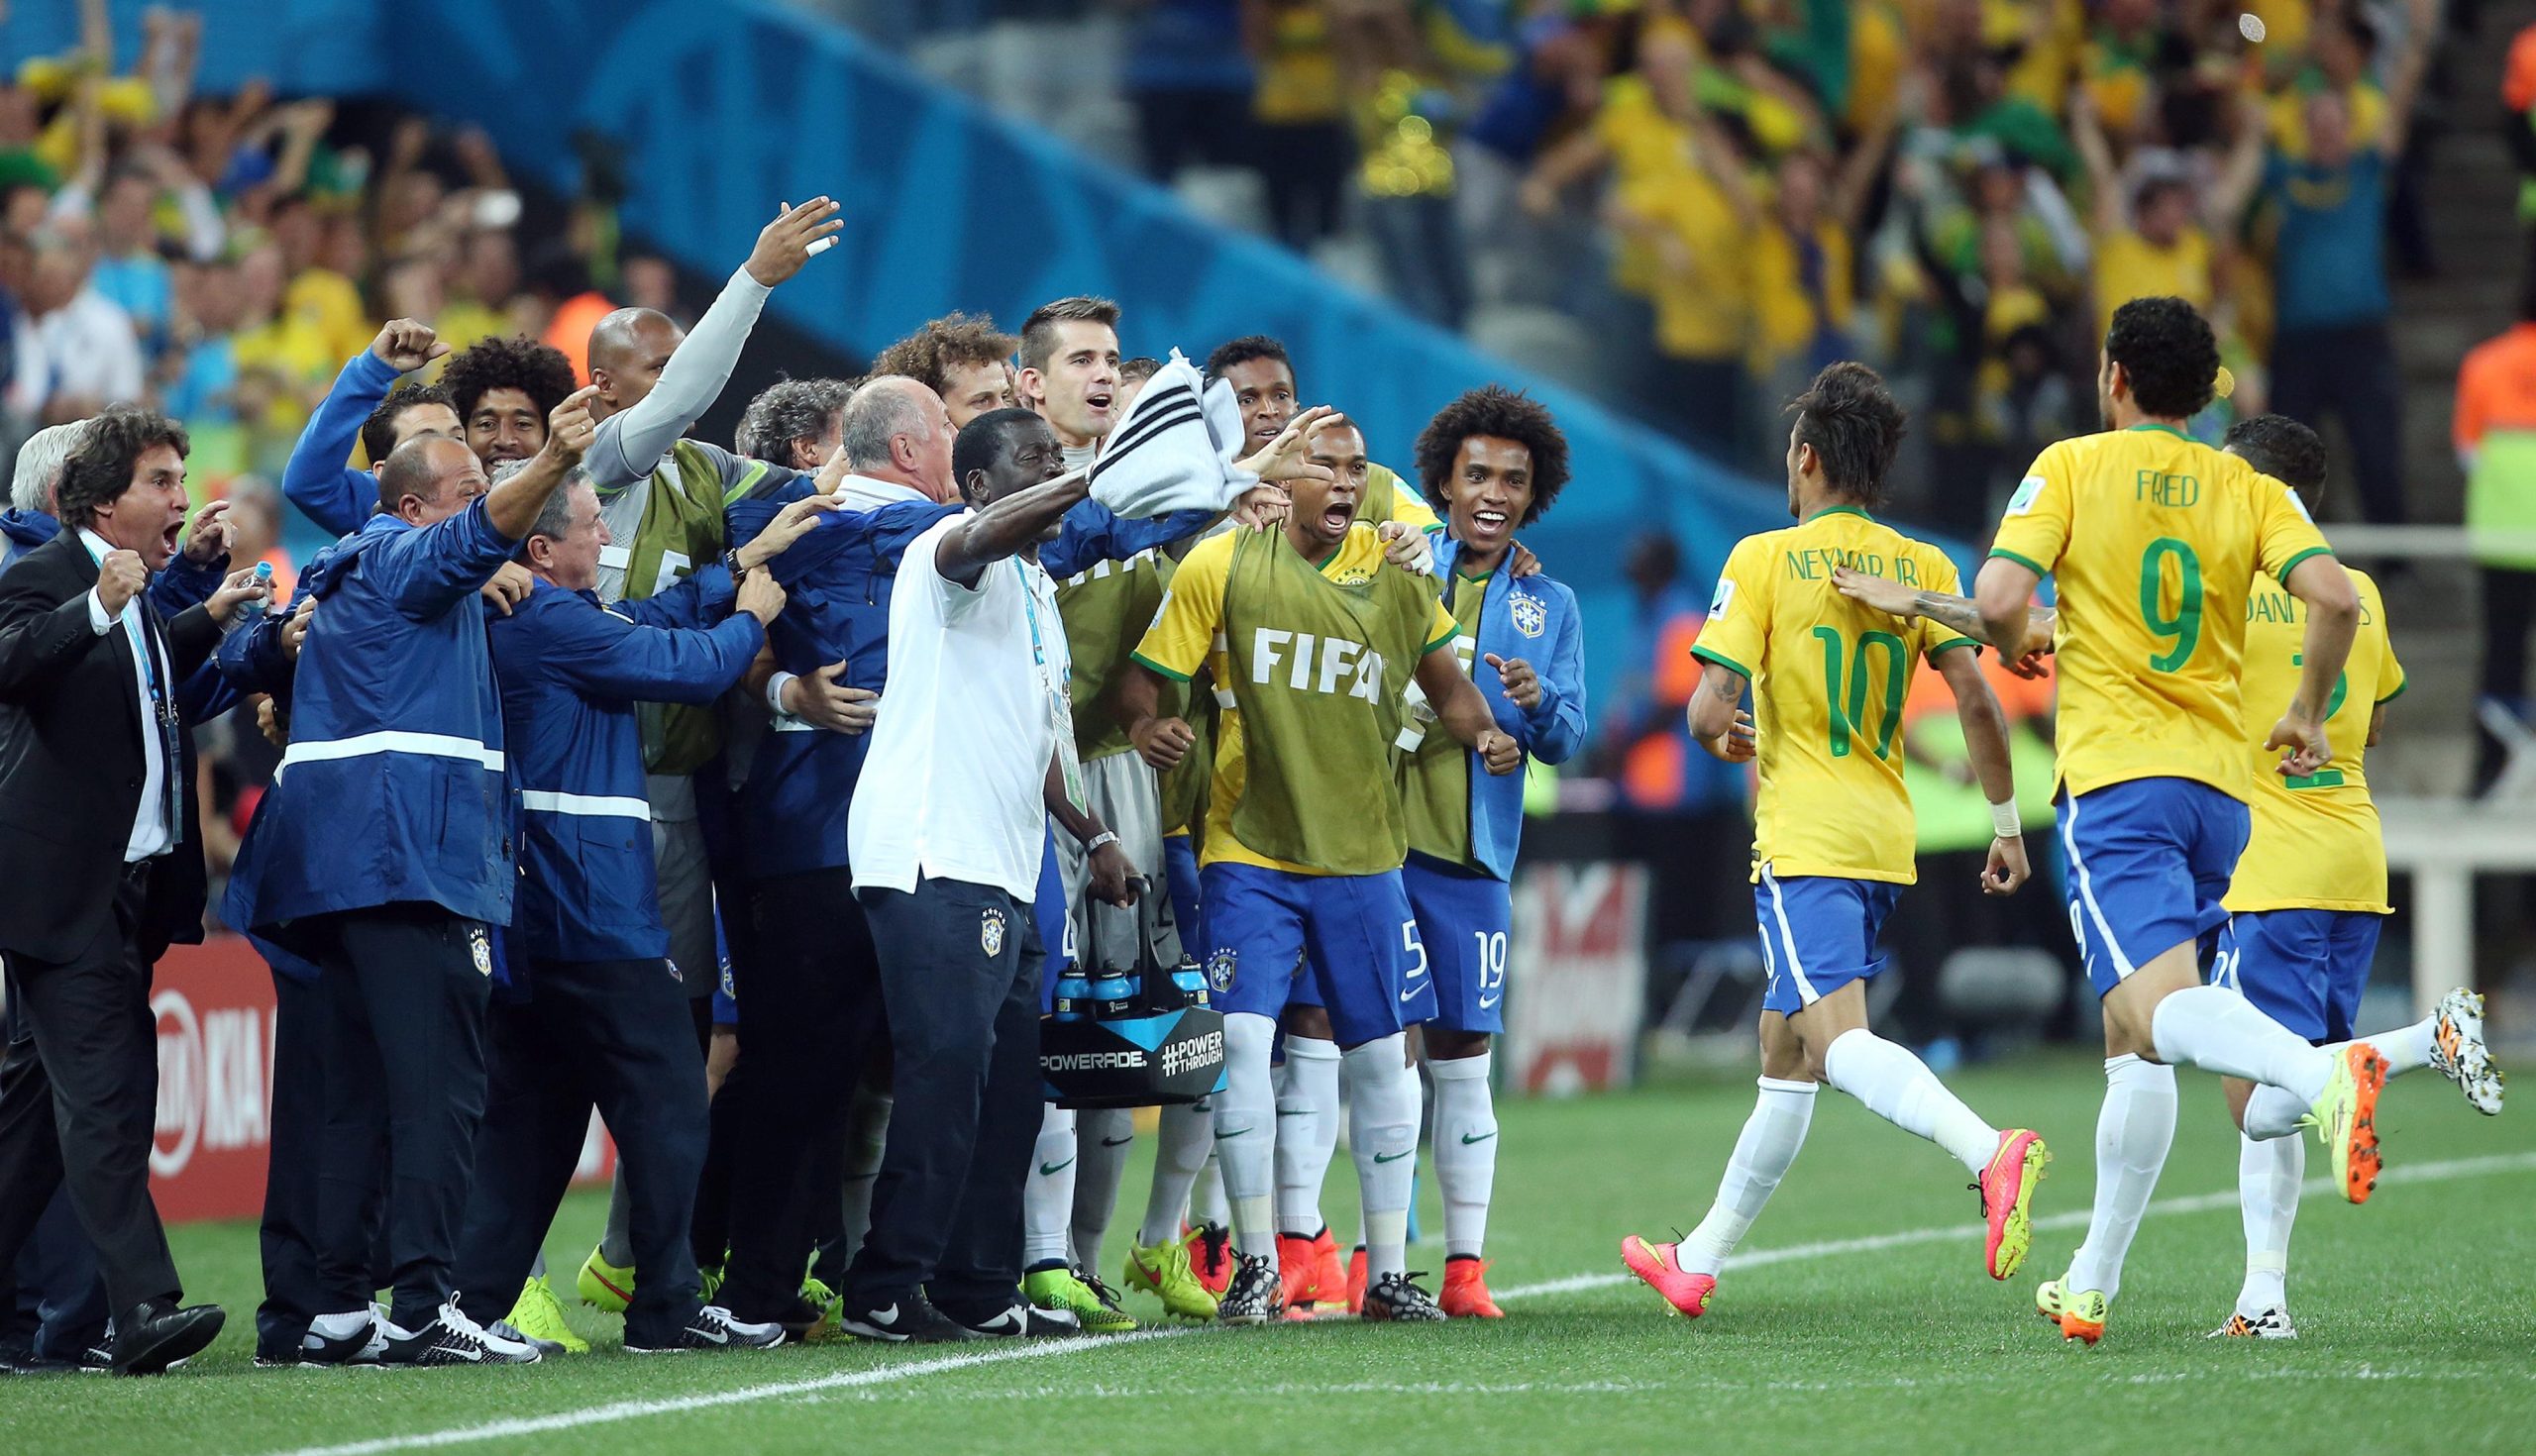 12.06.2014., Sao Paulo, Brazil - Svjetsko nogometno prvenstvo, Brazil - Hrvatska. Slavlje Brazila nakon gola Neymara. 
Photo: Sanjin Strukic/PIXSELL